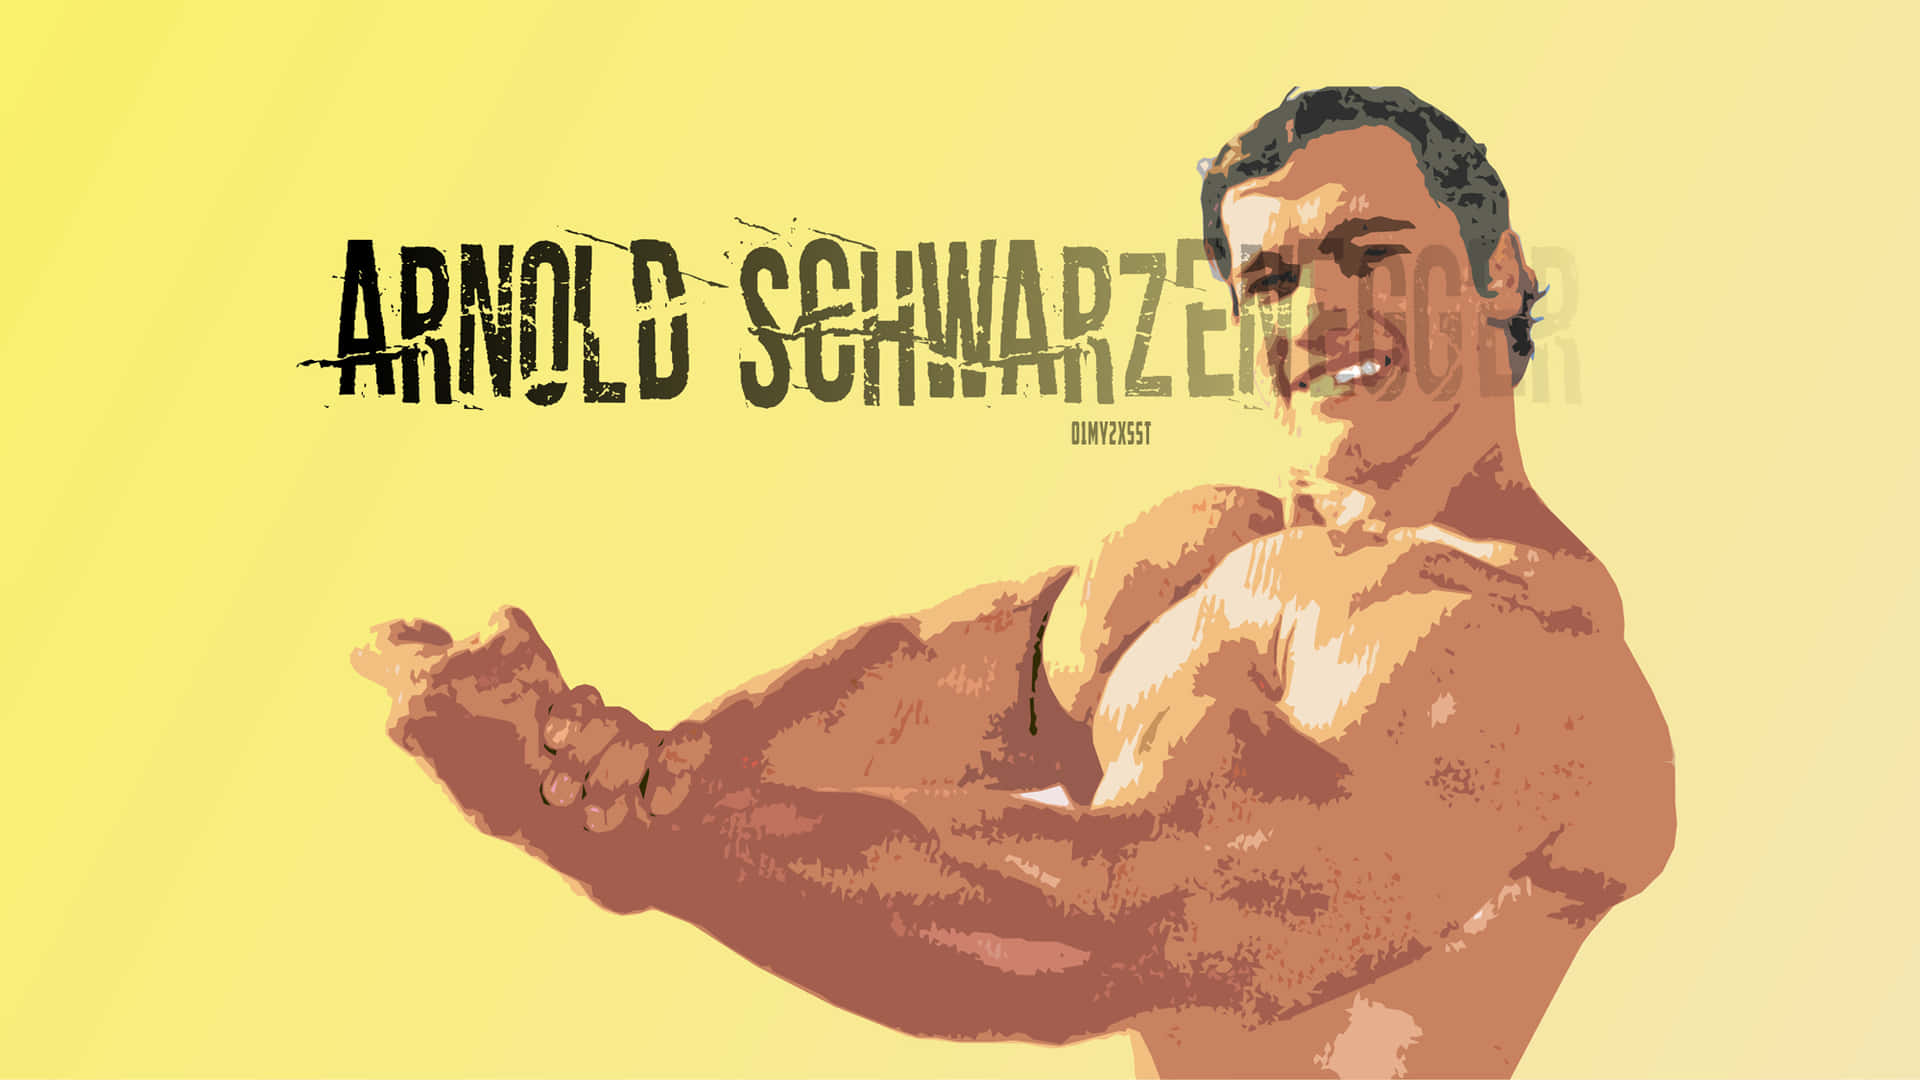 Bakgrundsbildmed Arnold Schwarzenegger